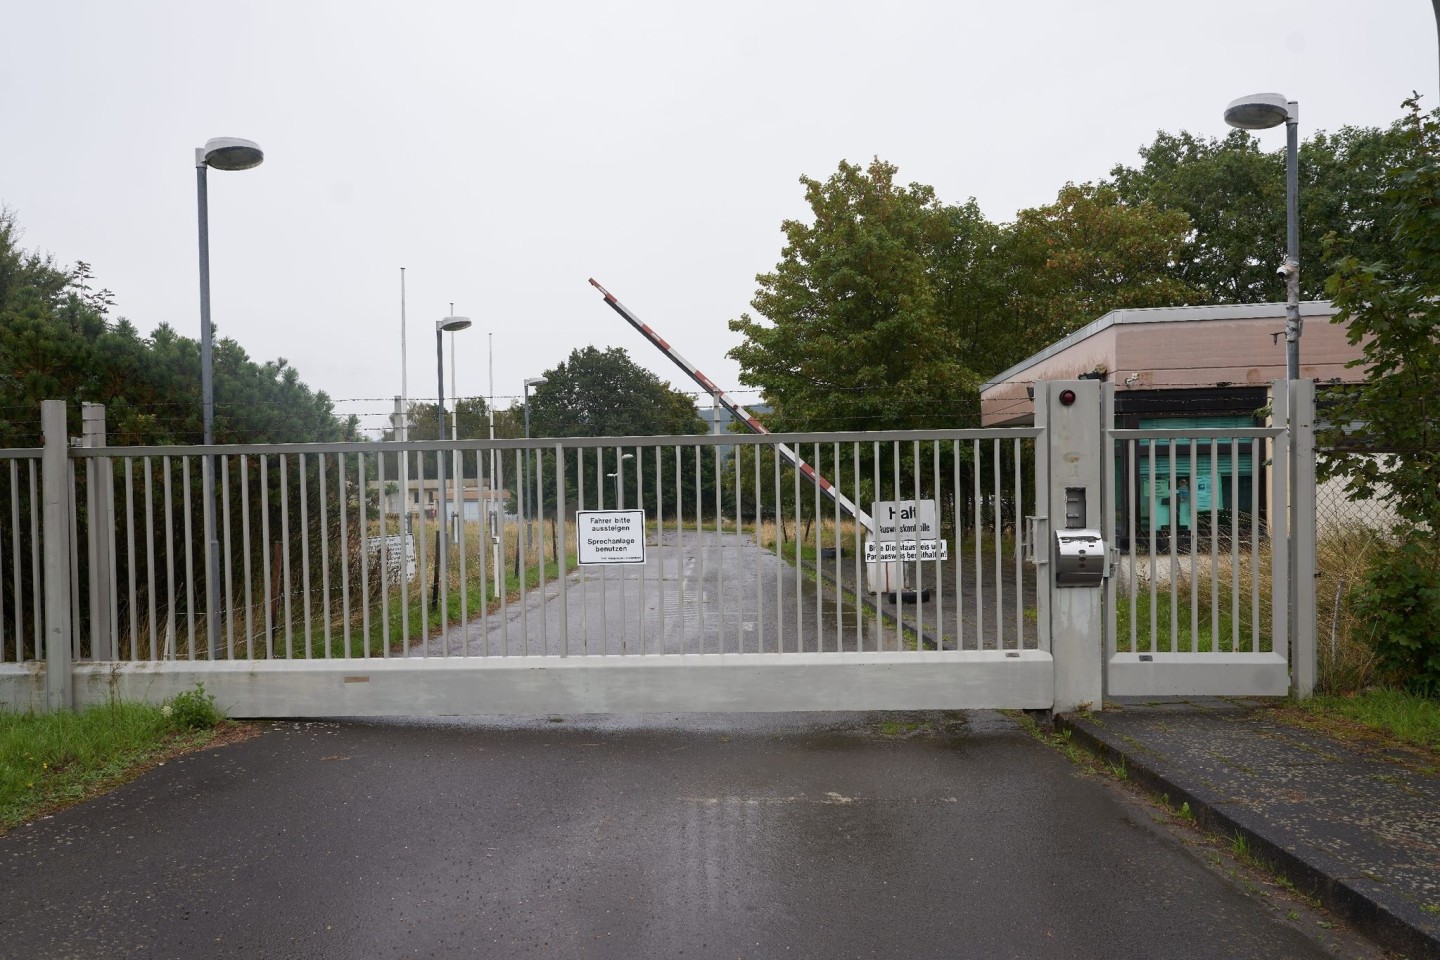 Blick auf das Gelände eines ehemaligen Bundeswehr-Bunkers in Traben-Trarbach, der als Cyber-Bunker bekannt wurde.